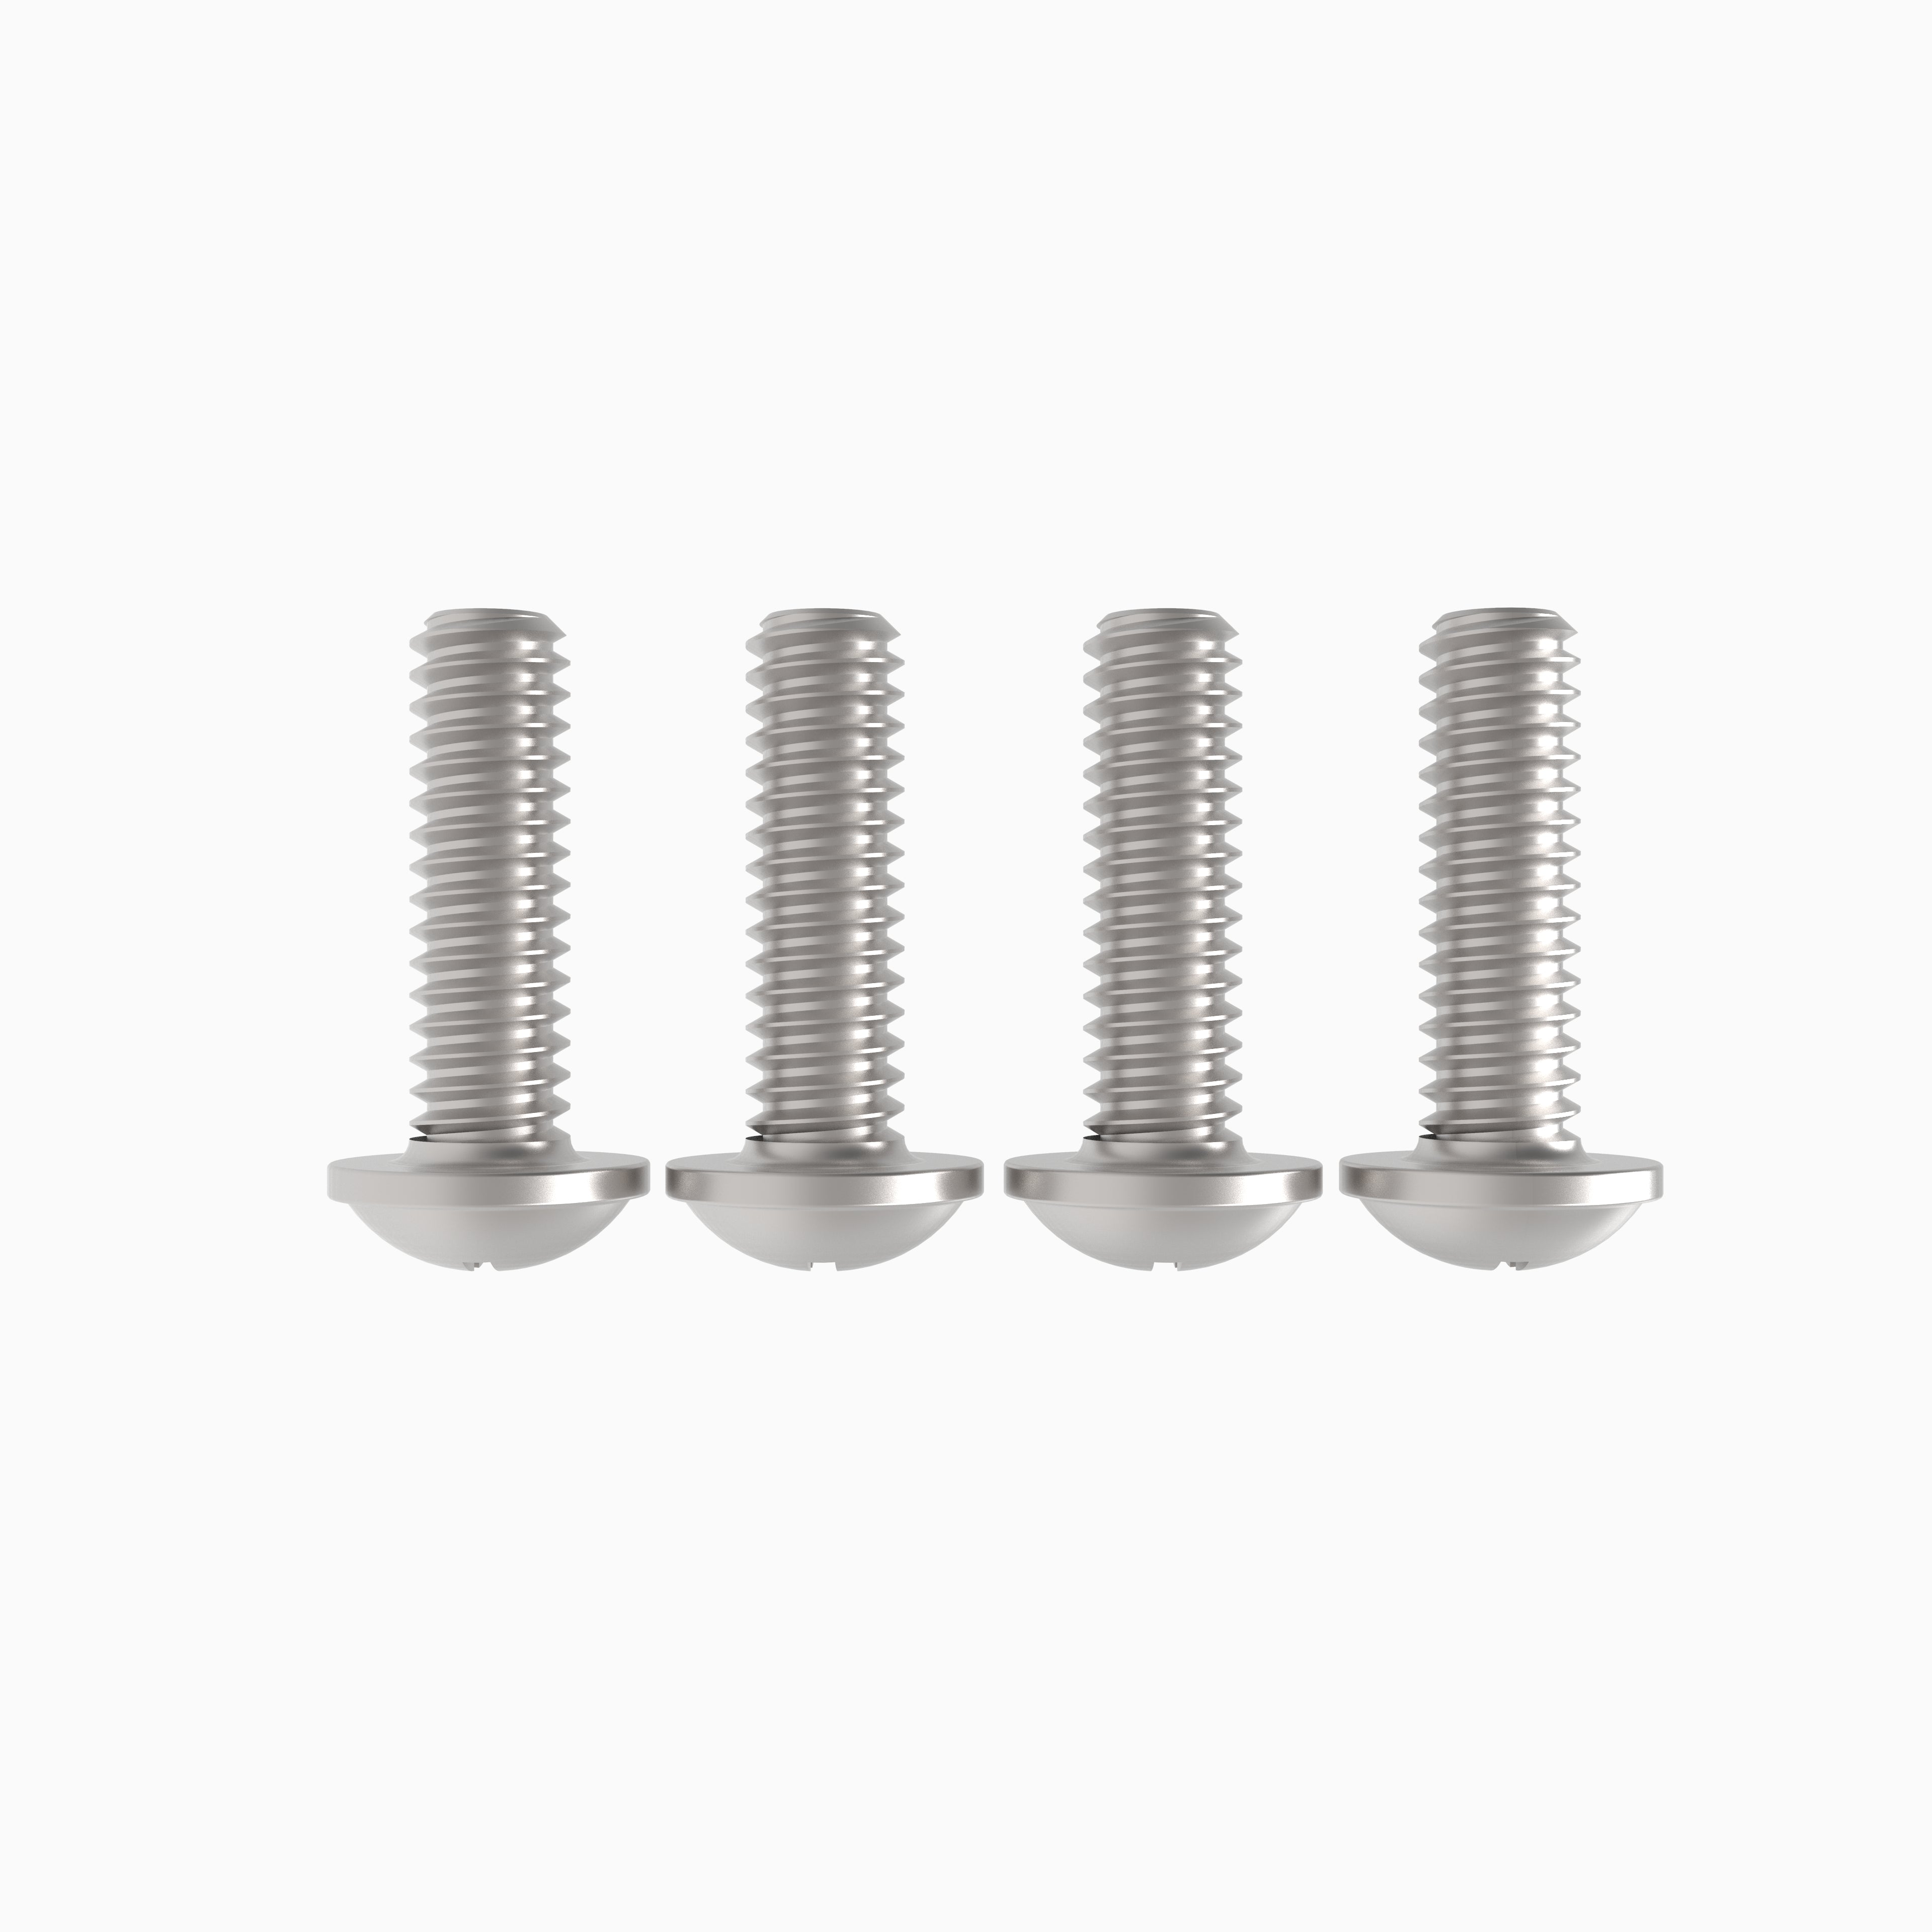 3.5 mm screws (4 pack)